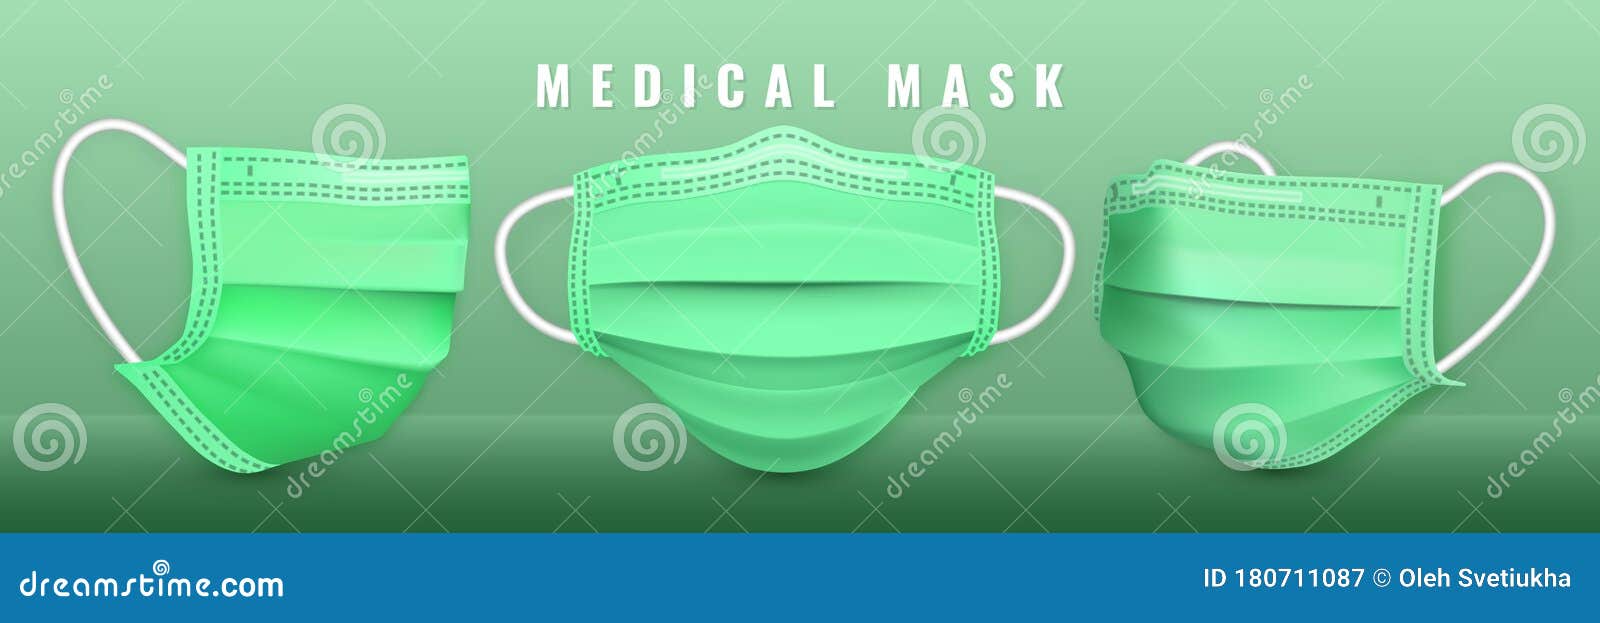 Download Realistic Medical Face Mask. Details 3d Medical Mask. Vector Illustration Stock Vector ...